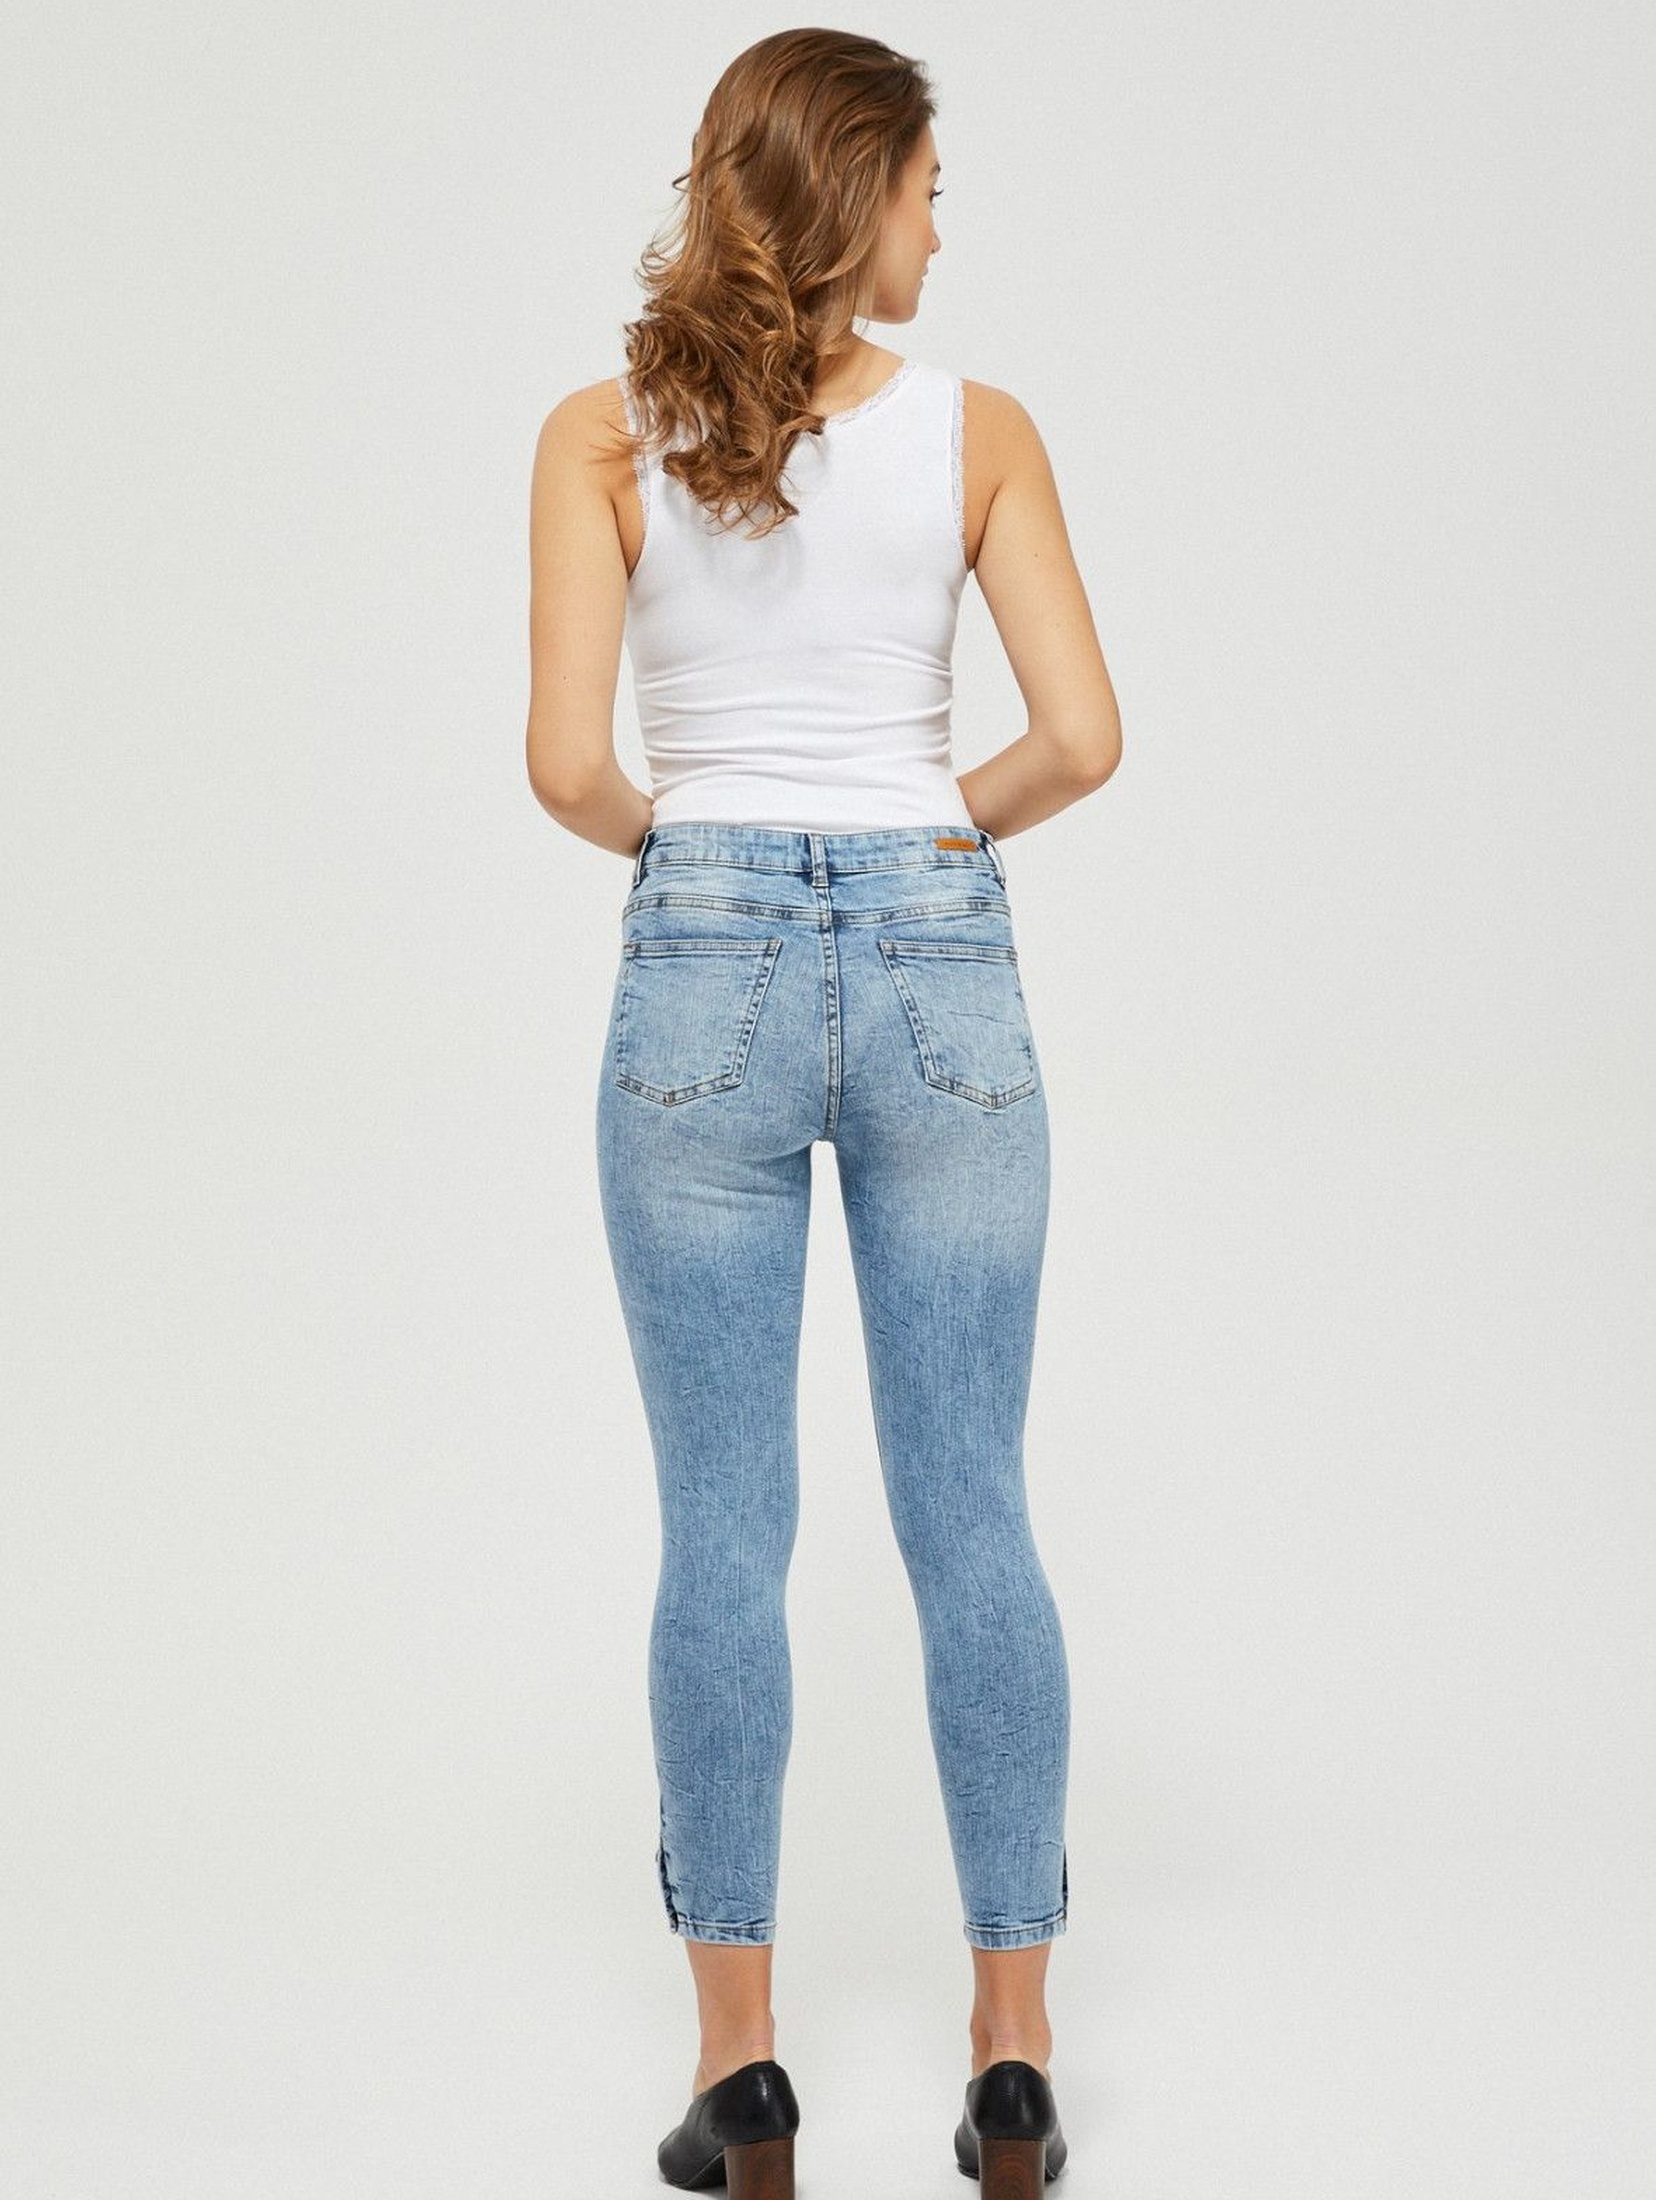 Jeansy skinny z guzikami niebieskie